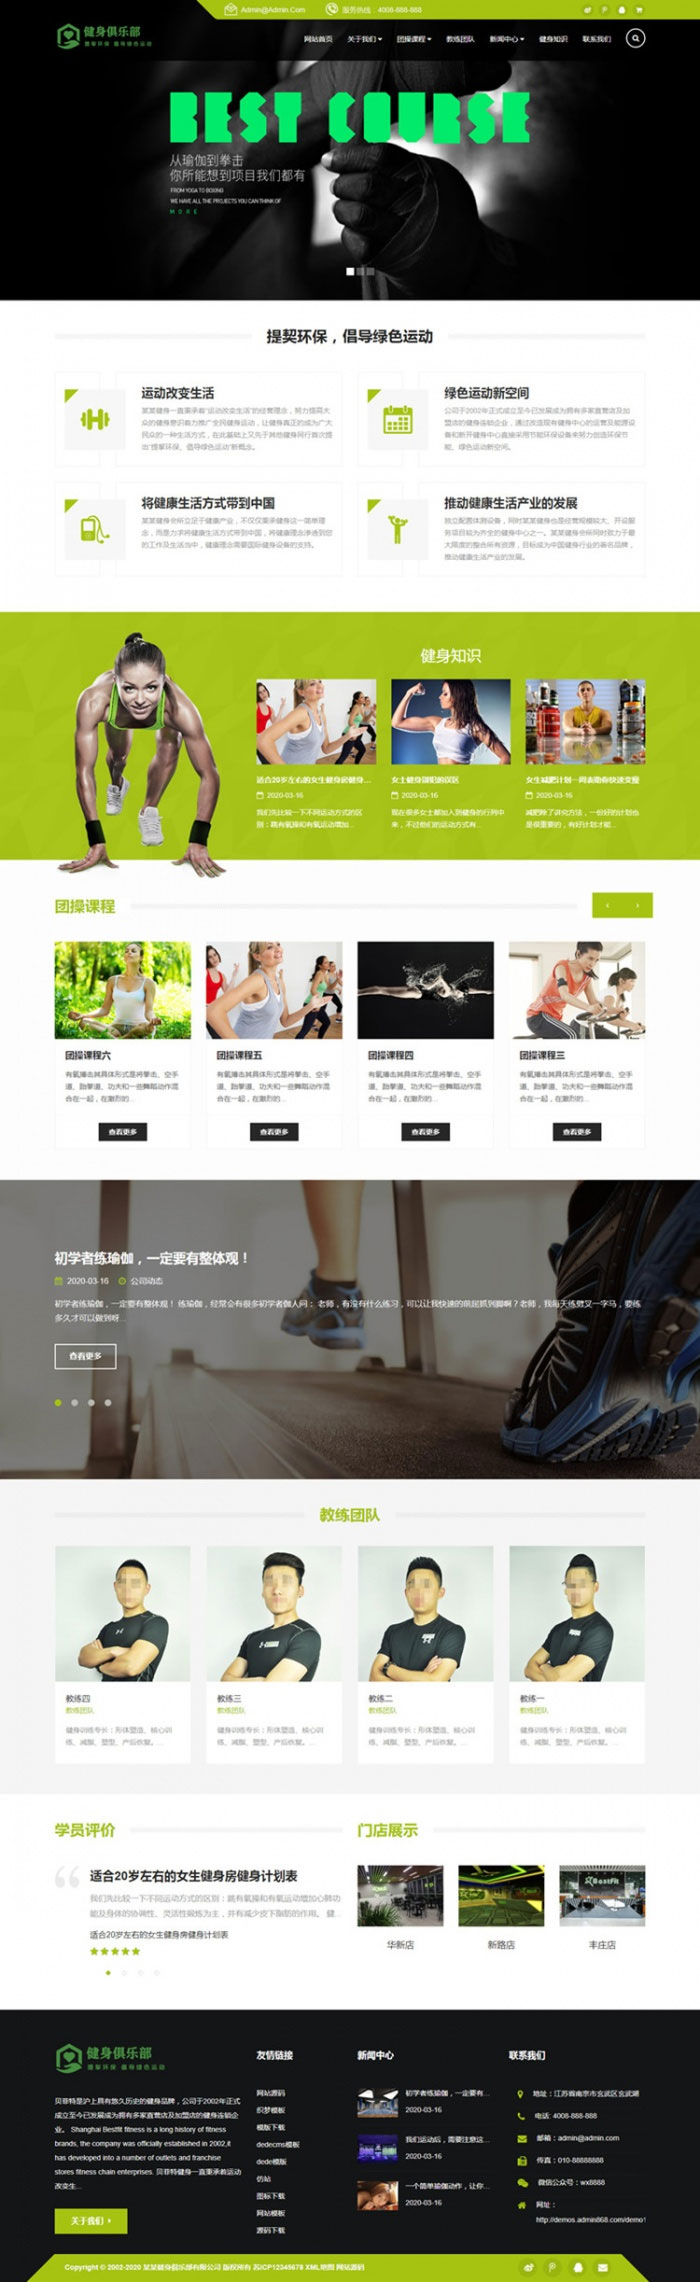 织梦dedecms绿色相应式健身俱乐部企业网站模板(自顺应手机移动端)-零度空间